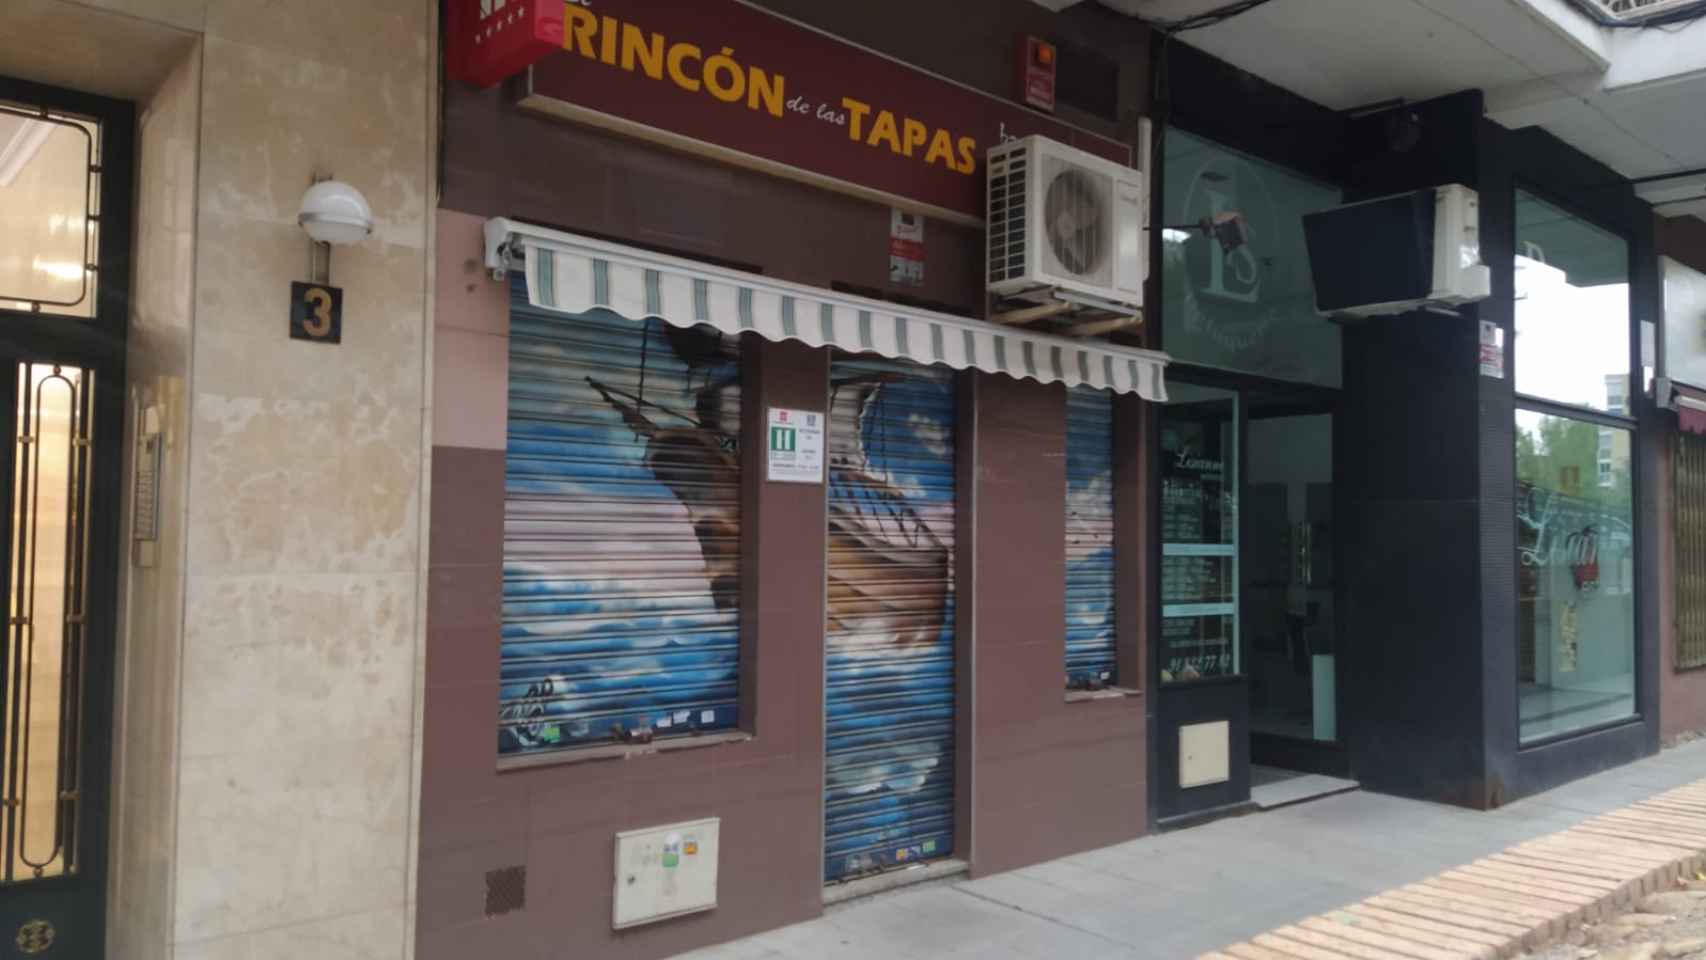 El Rincón de las Tapas, el único bar que al parecer ofrecía empanadas mostoleñas, cerrado permanentemente.